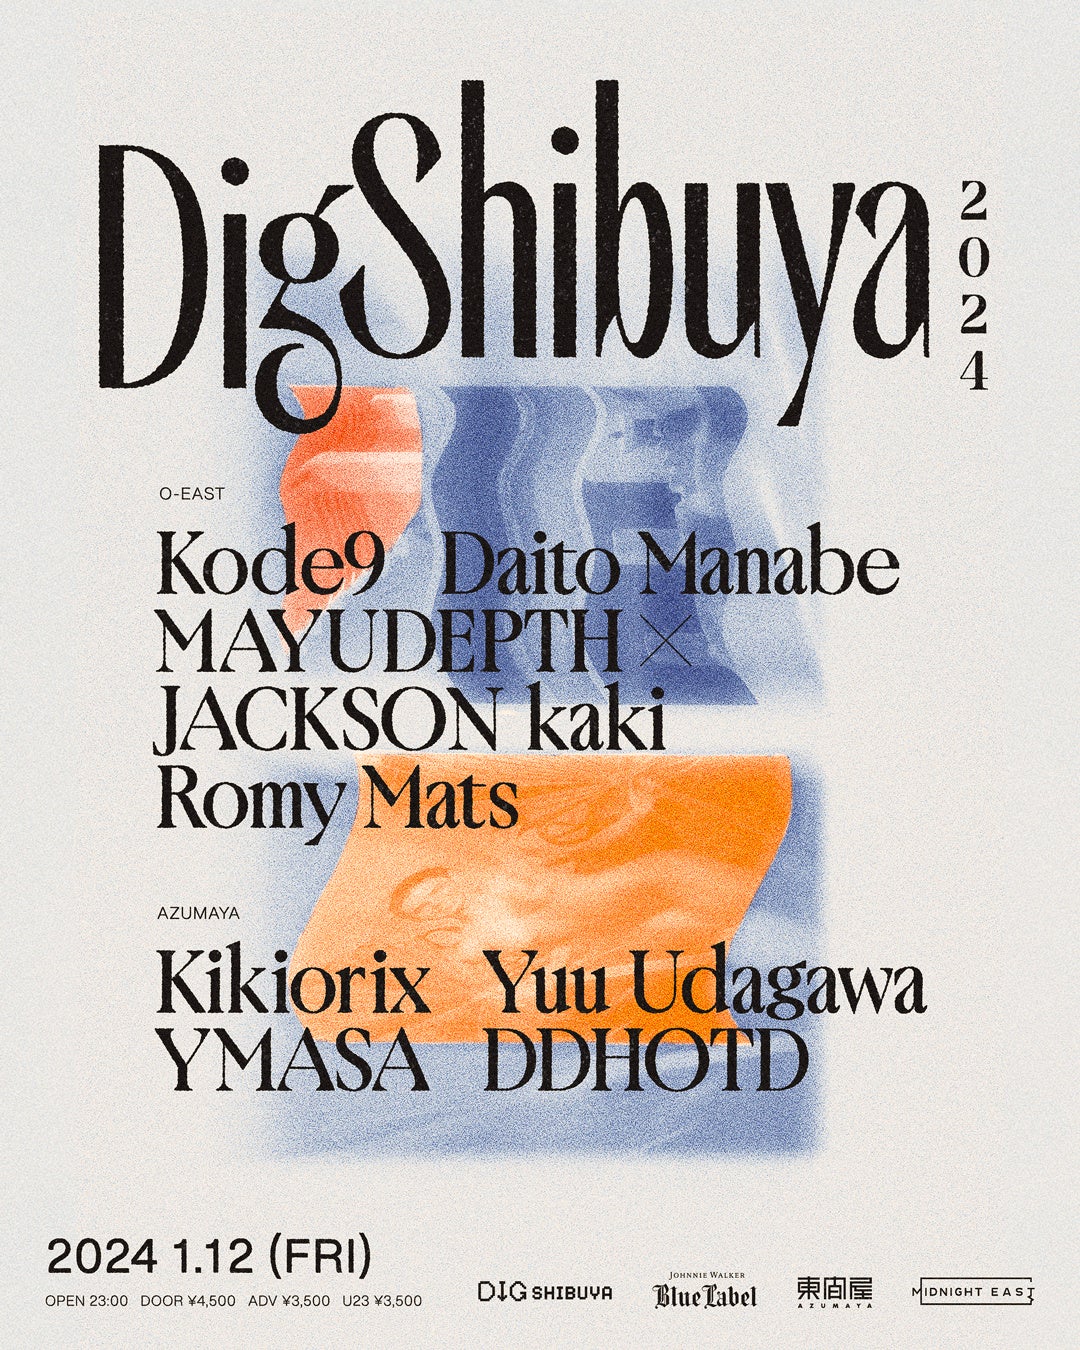 渋谷からうまれる最新カルチャーの祭典“DIG SHIBUYA”セッション内容を発表